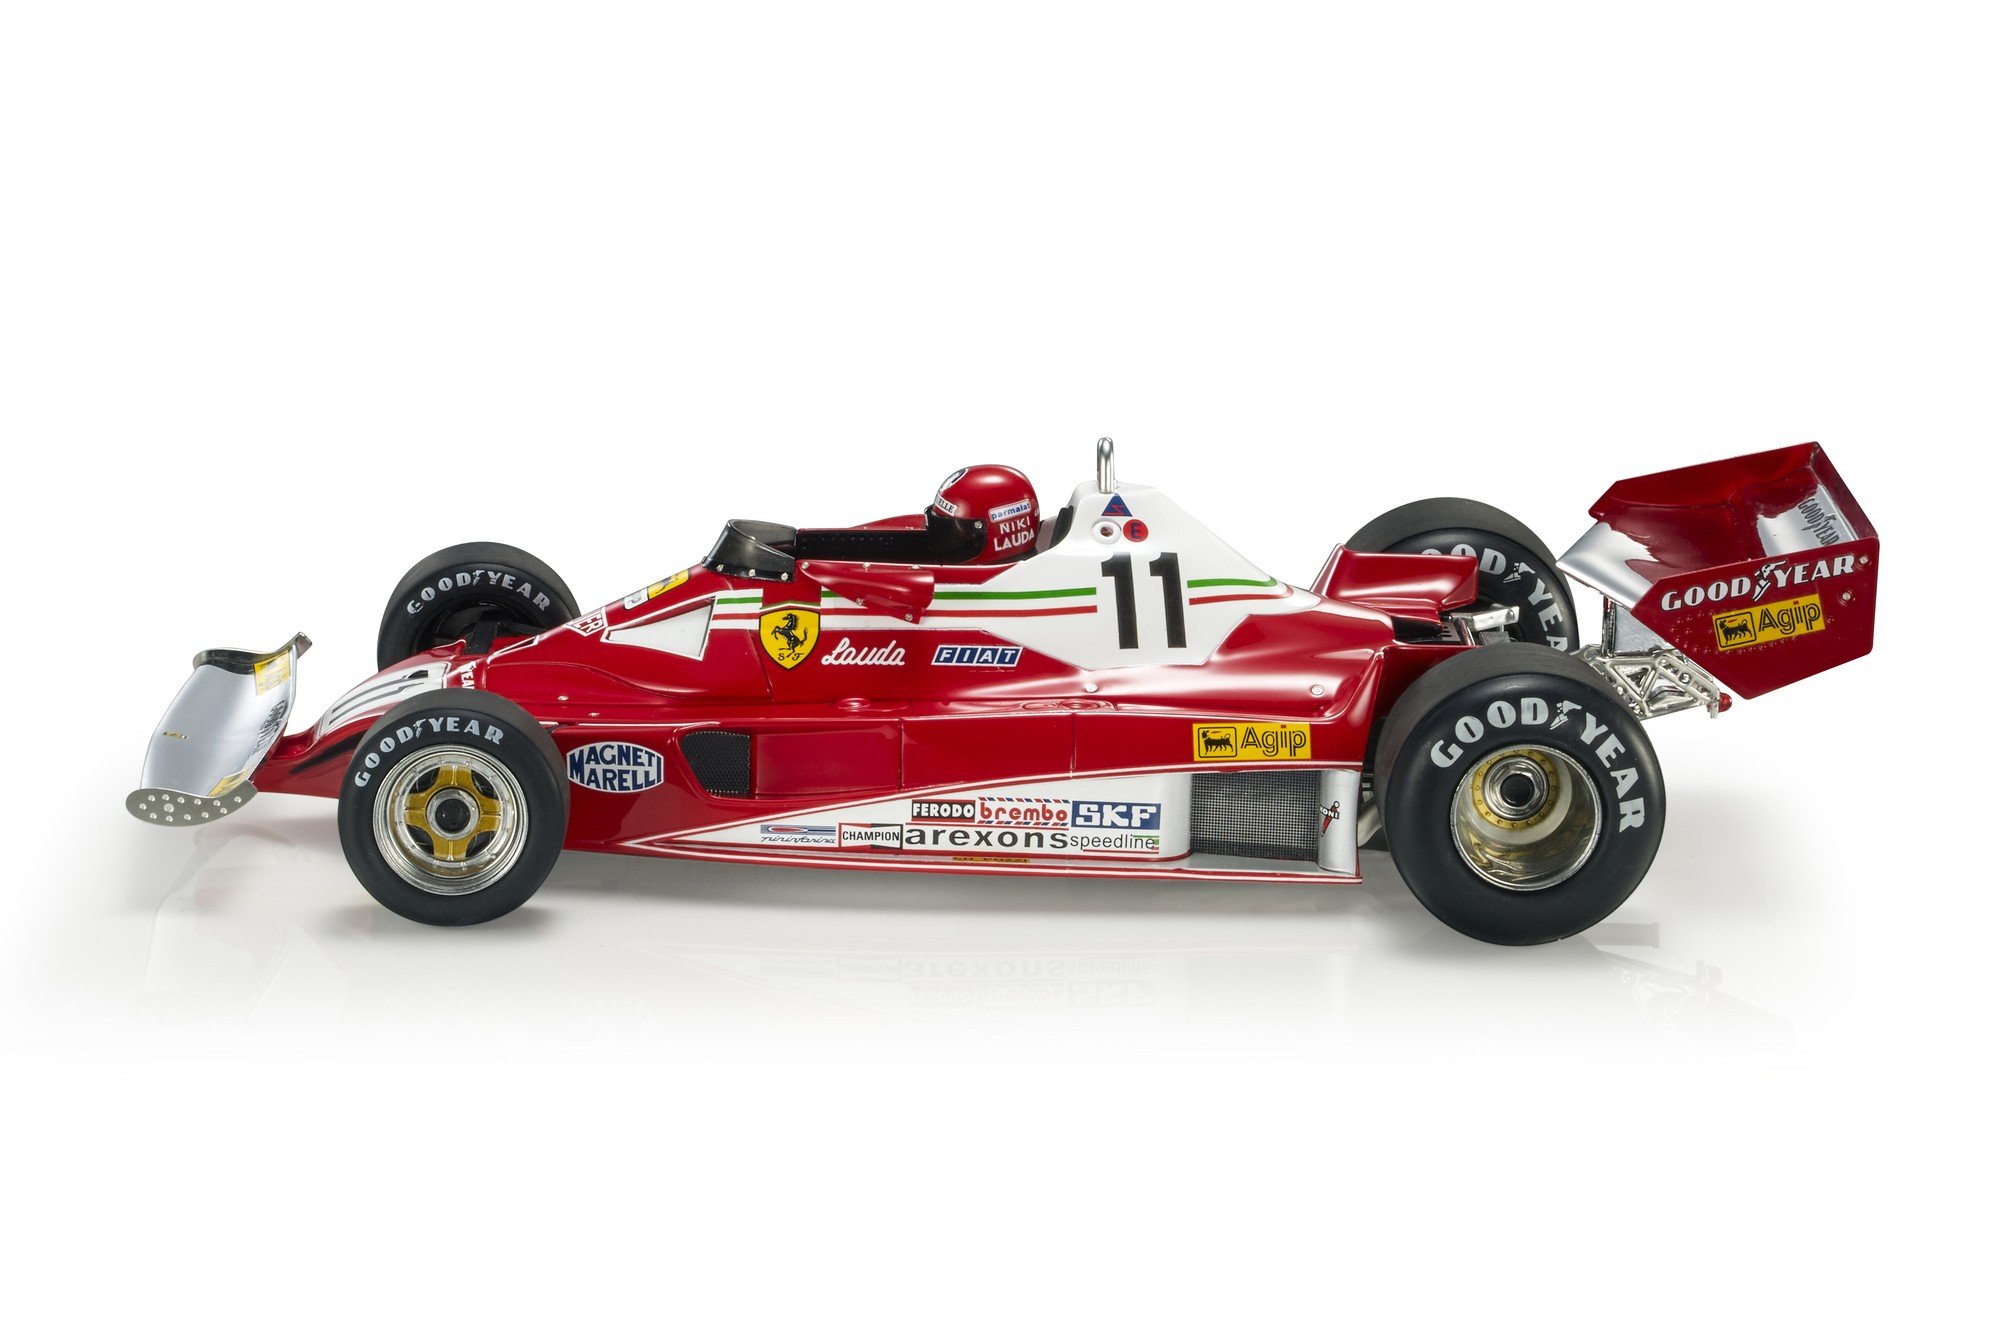 Scuderia Ferrari F1 2023 stickers for Husqvarna Automower and Gardena –